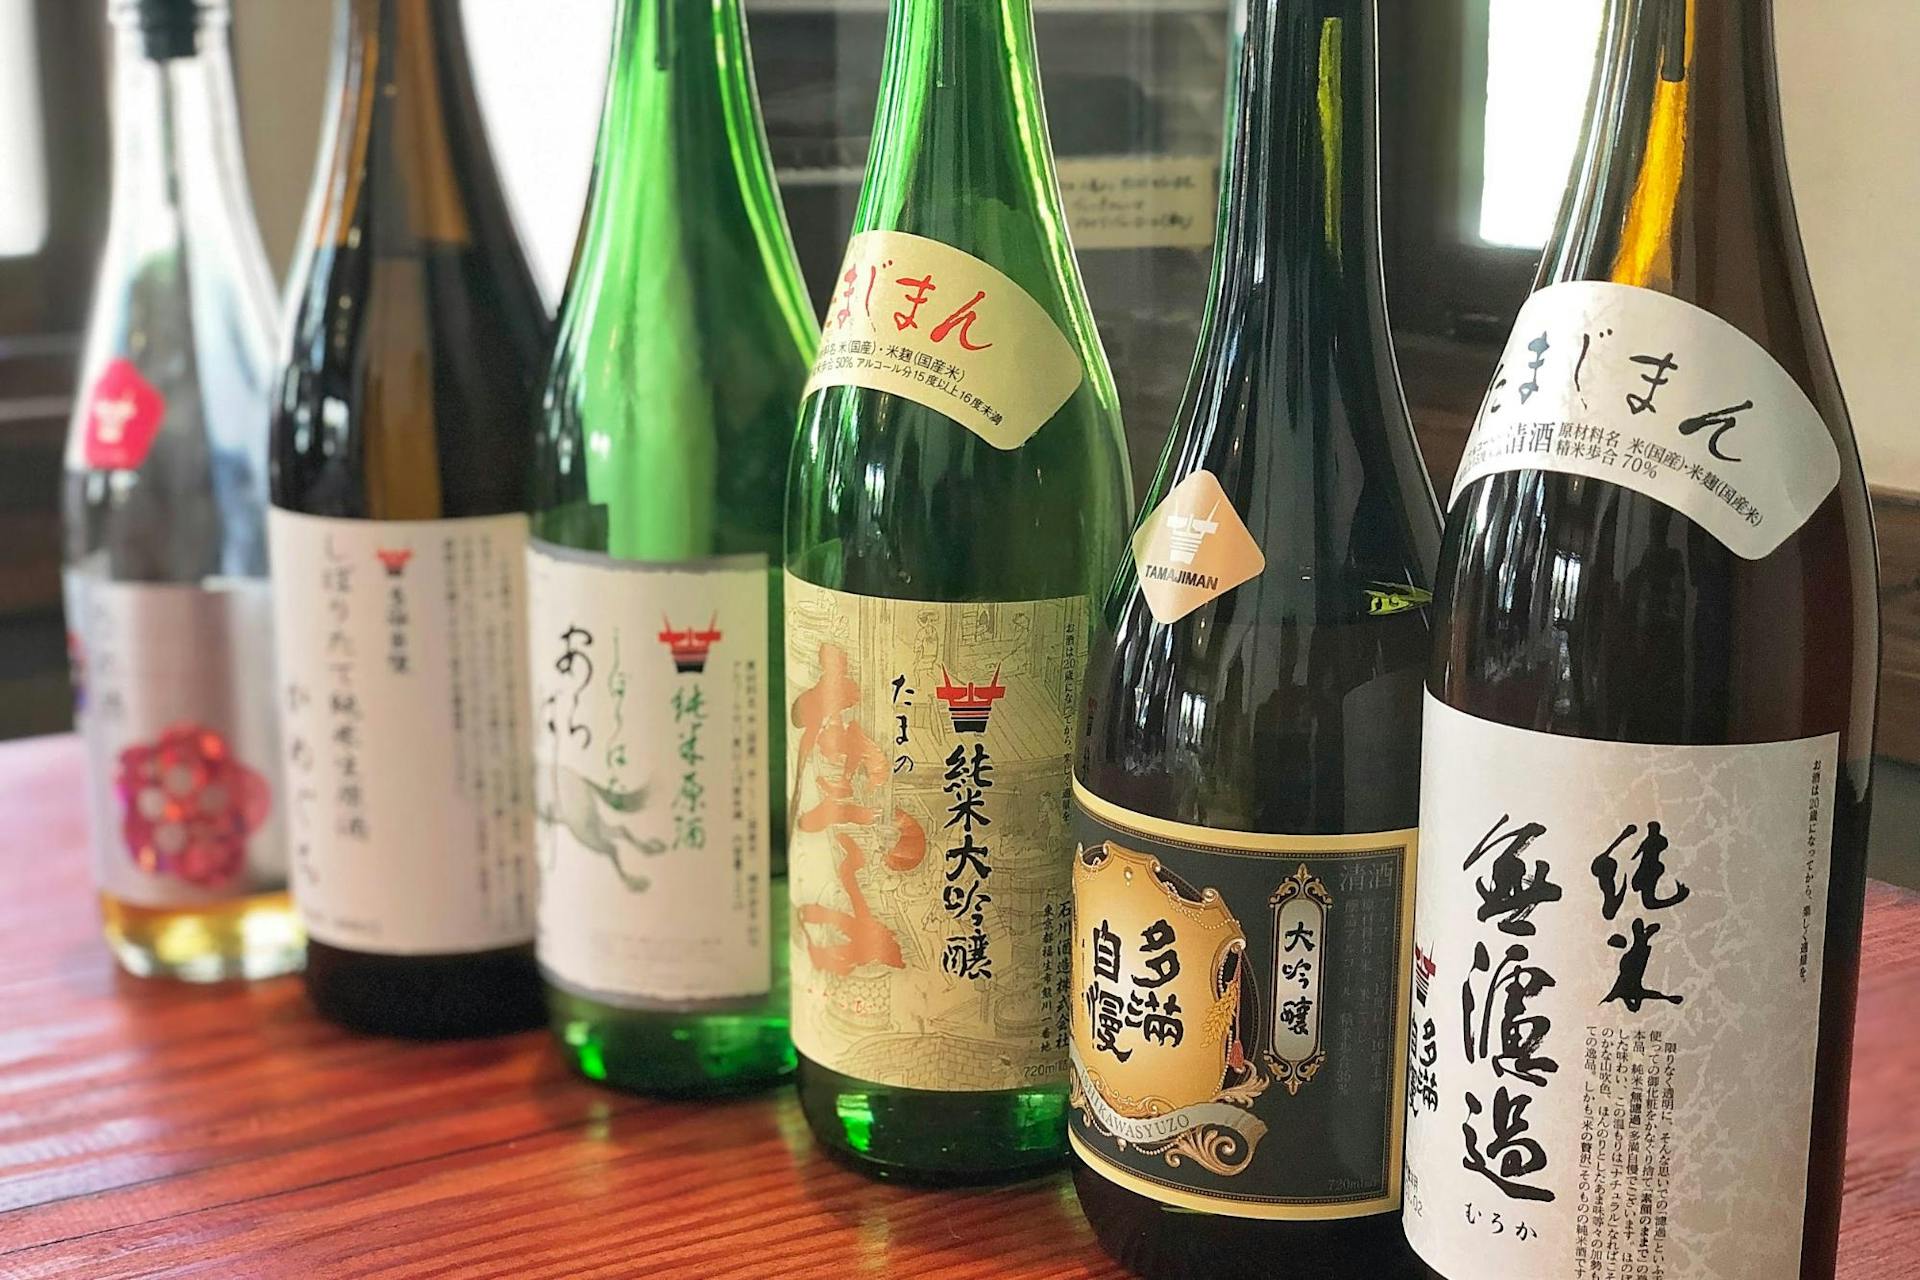 Samples of sake